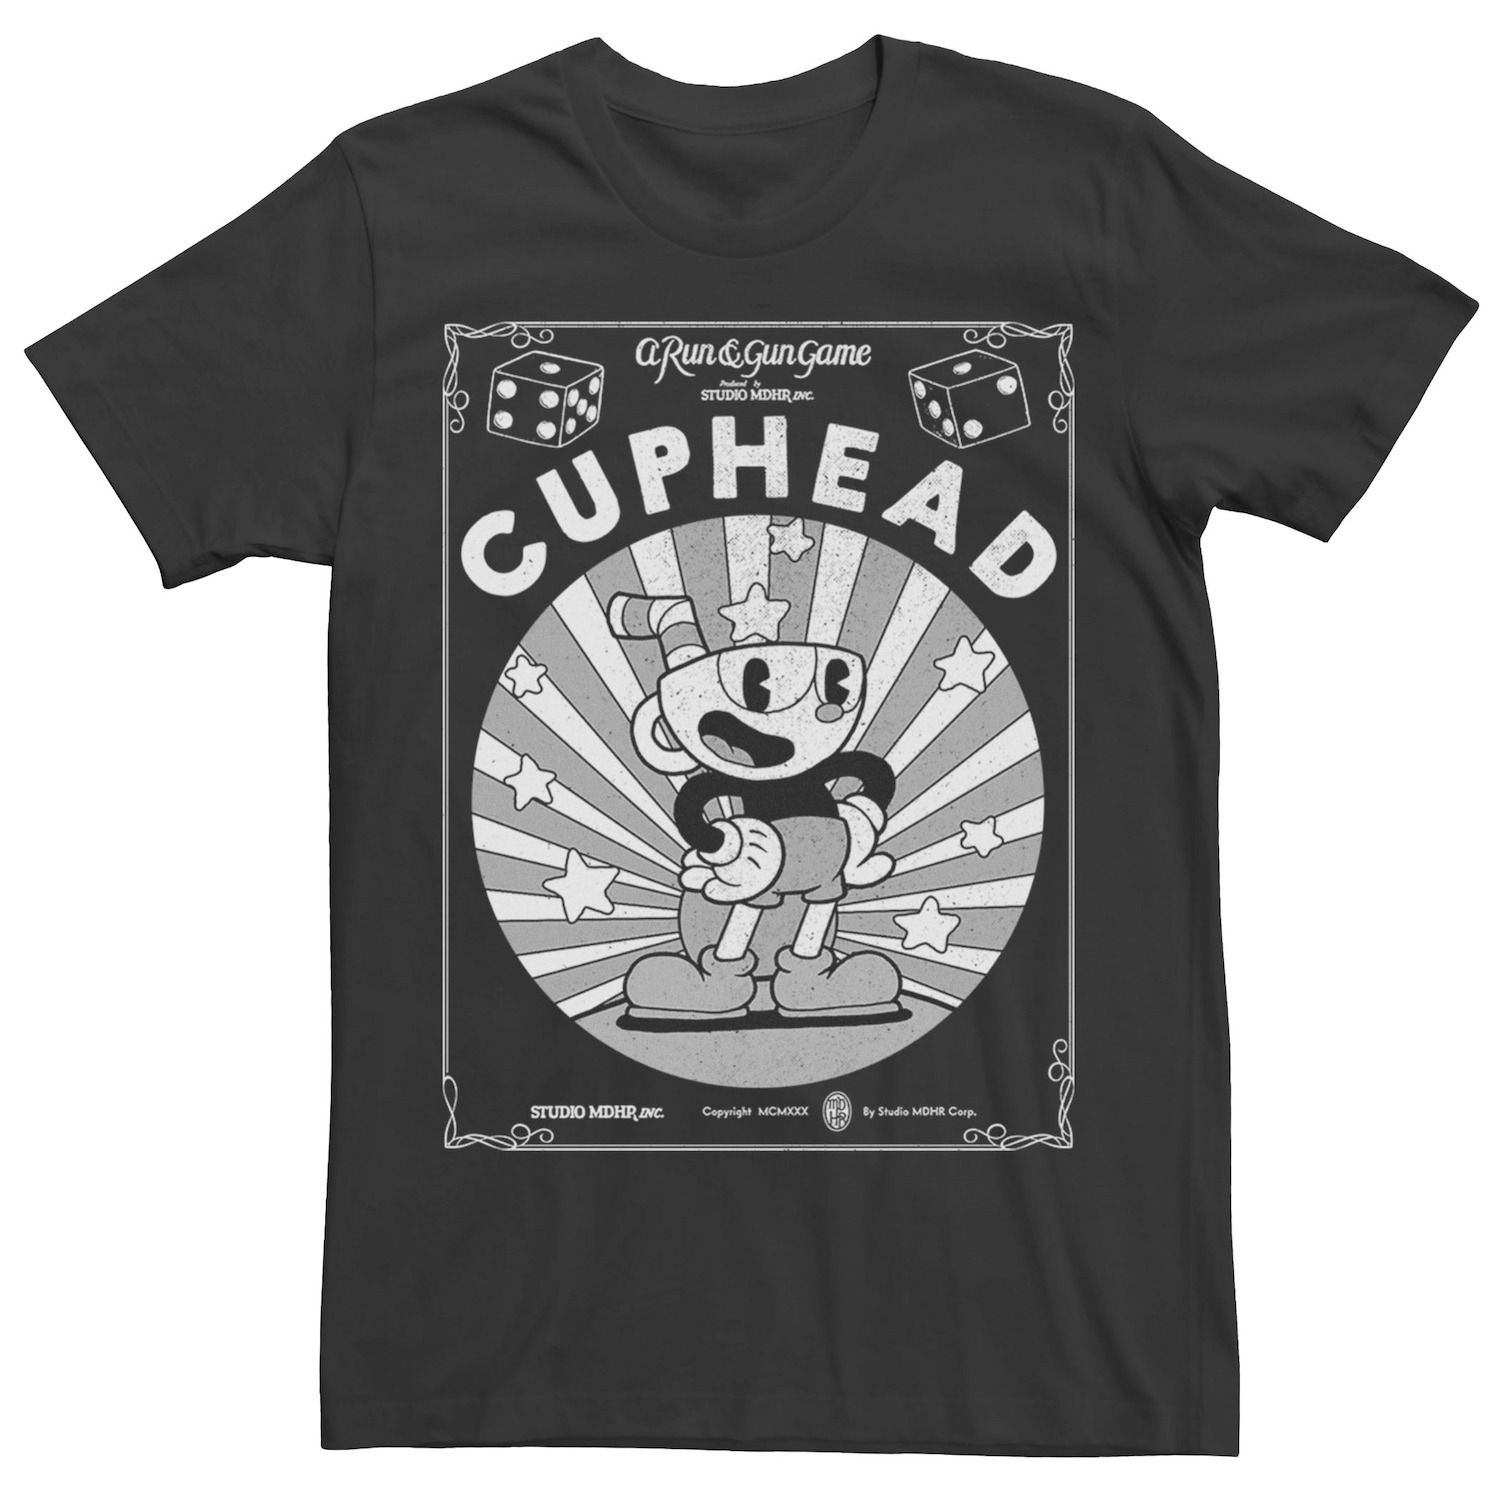 Мужская футболка с изображением плаката и плаката Cuphead Licensed Character